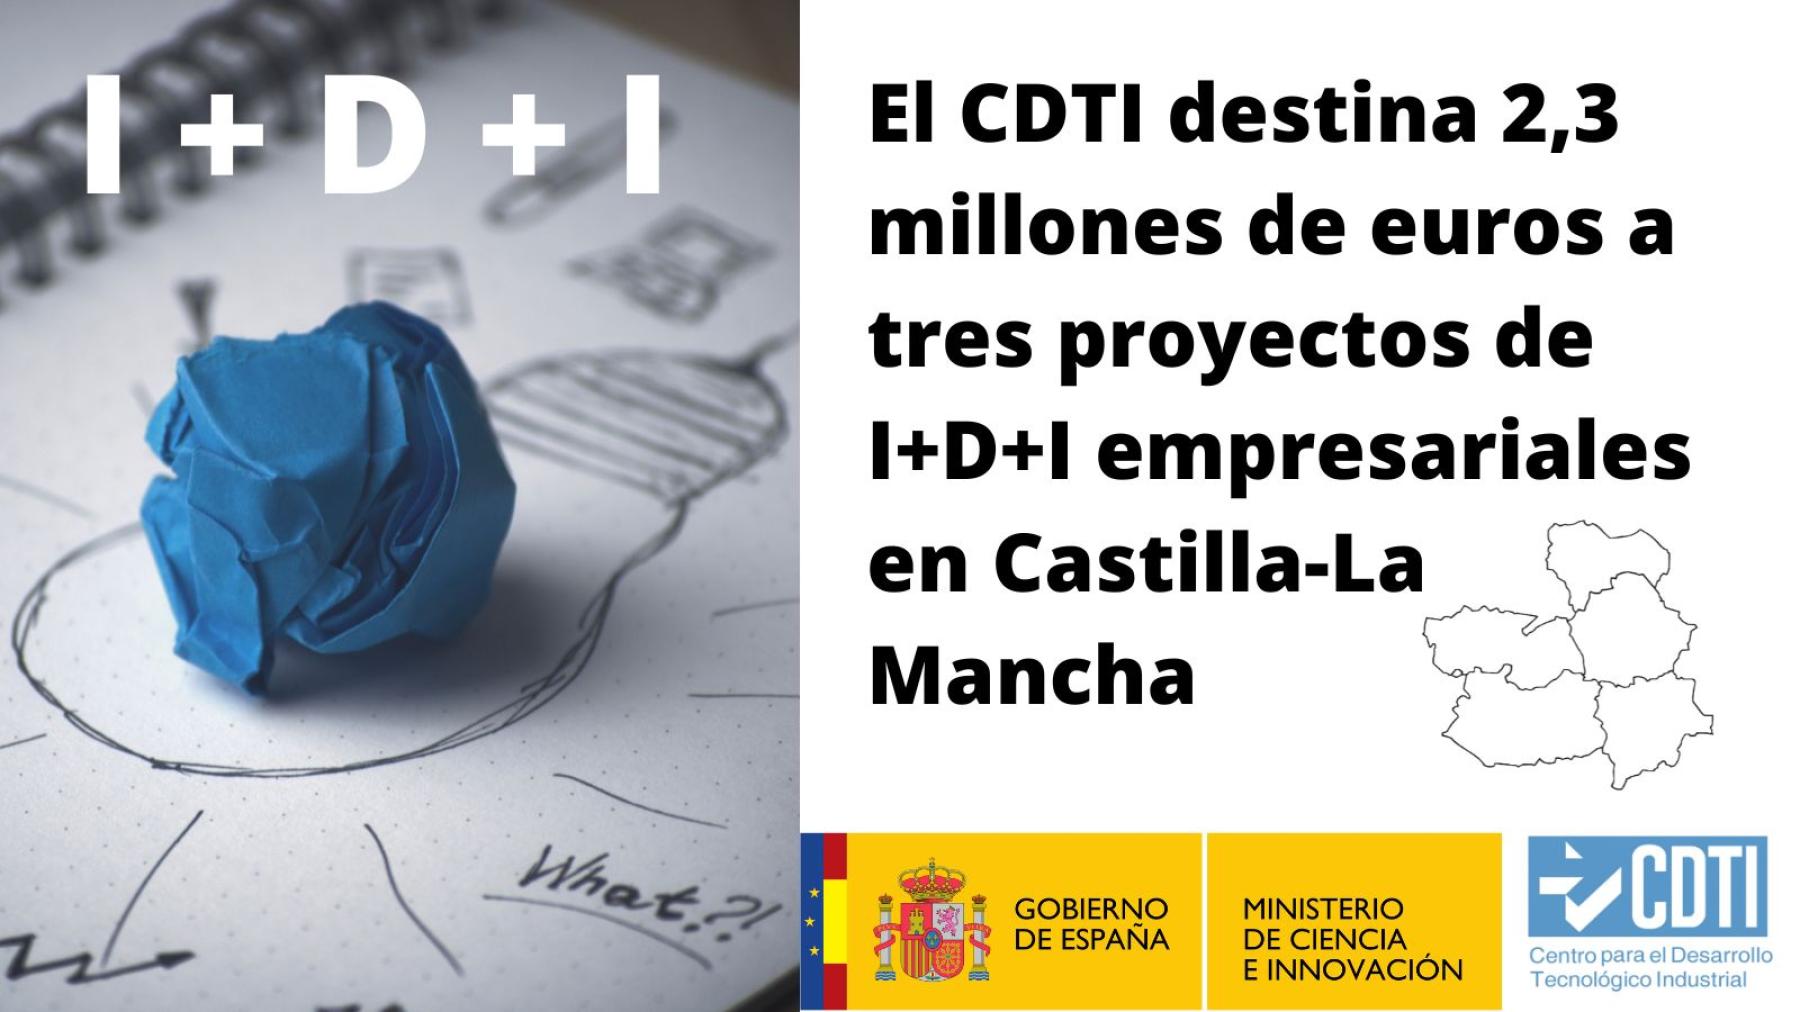 El CDTI destina 2,3 millones de euros a tres proyectos de I+D+I empresariales en Castilla-La Mancha